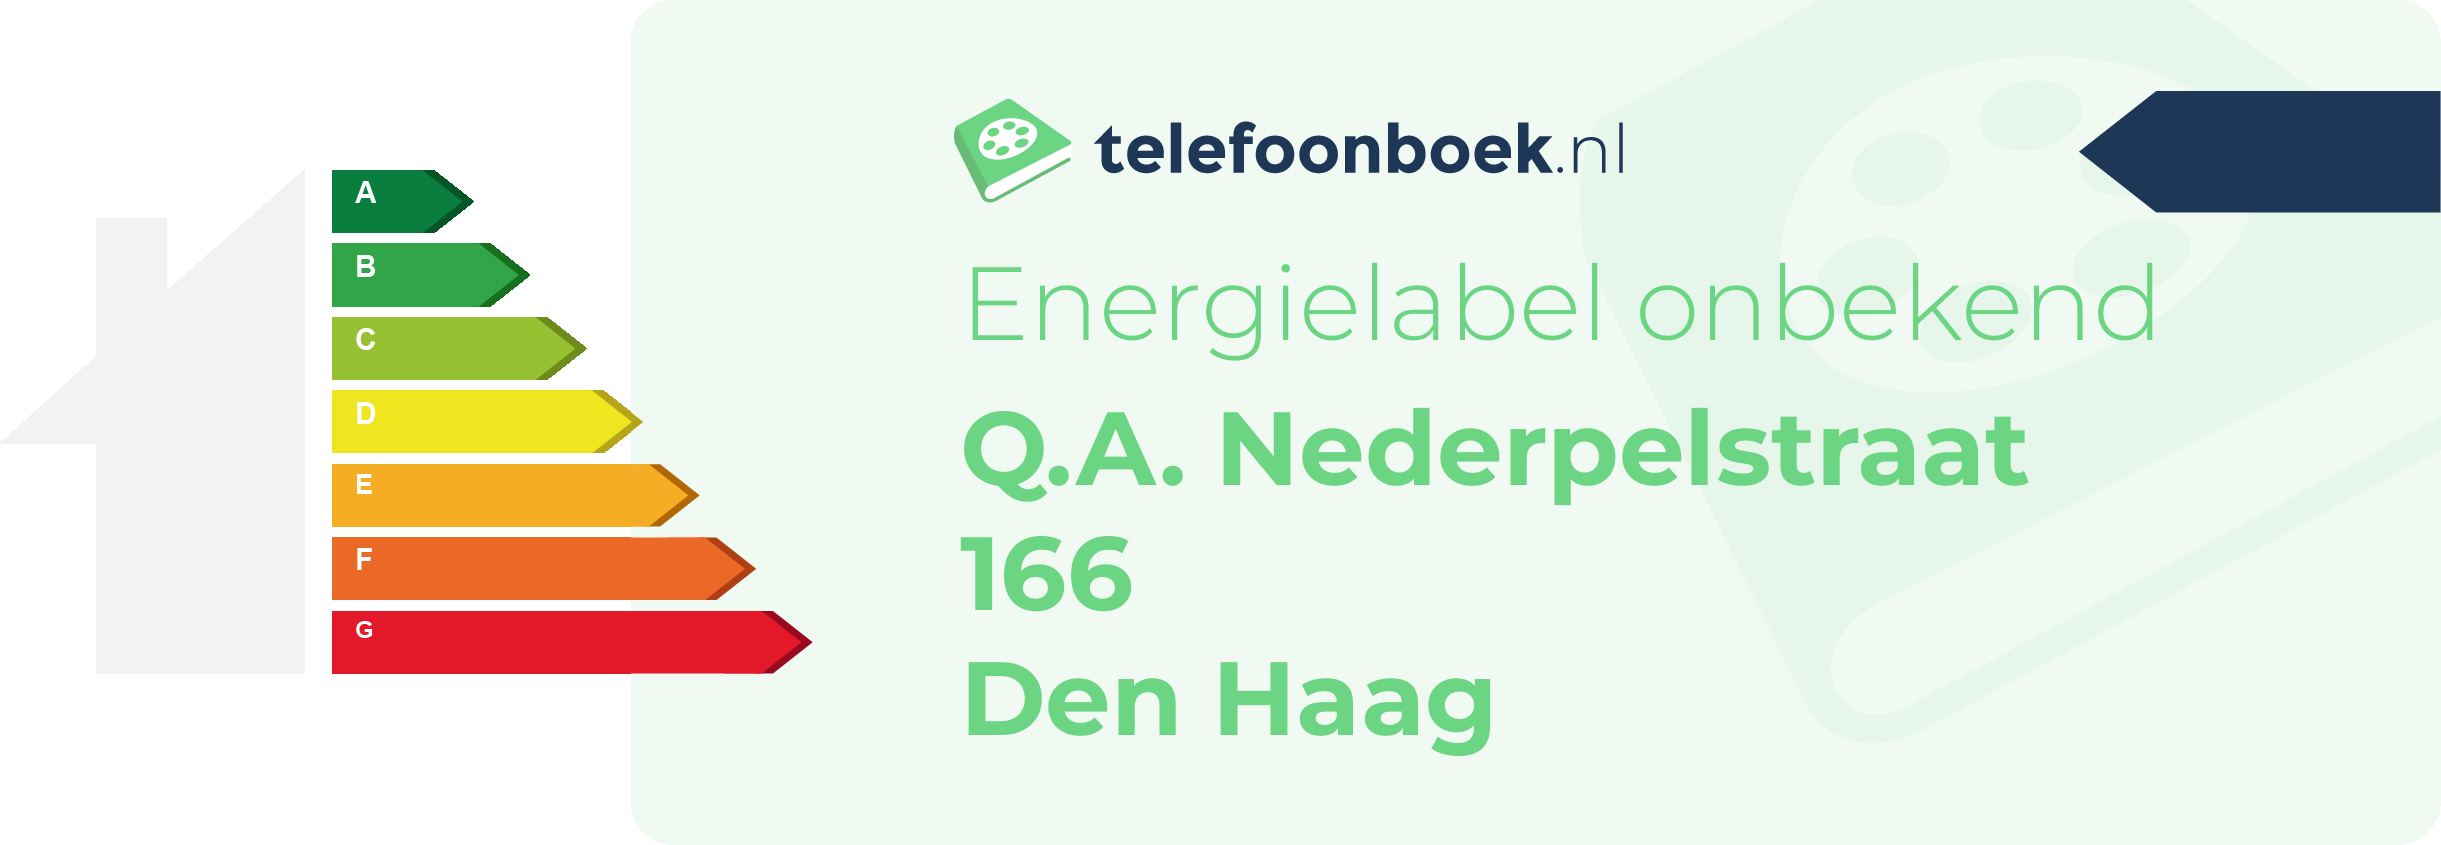 Energielabel Q.A. Nederpelstraat 166 Den Haag